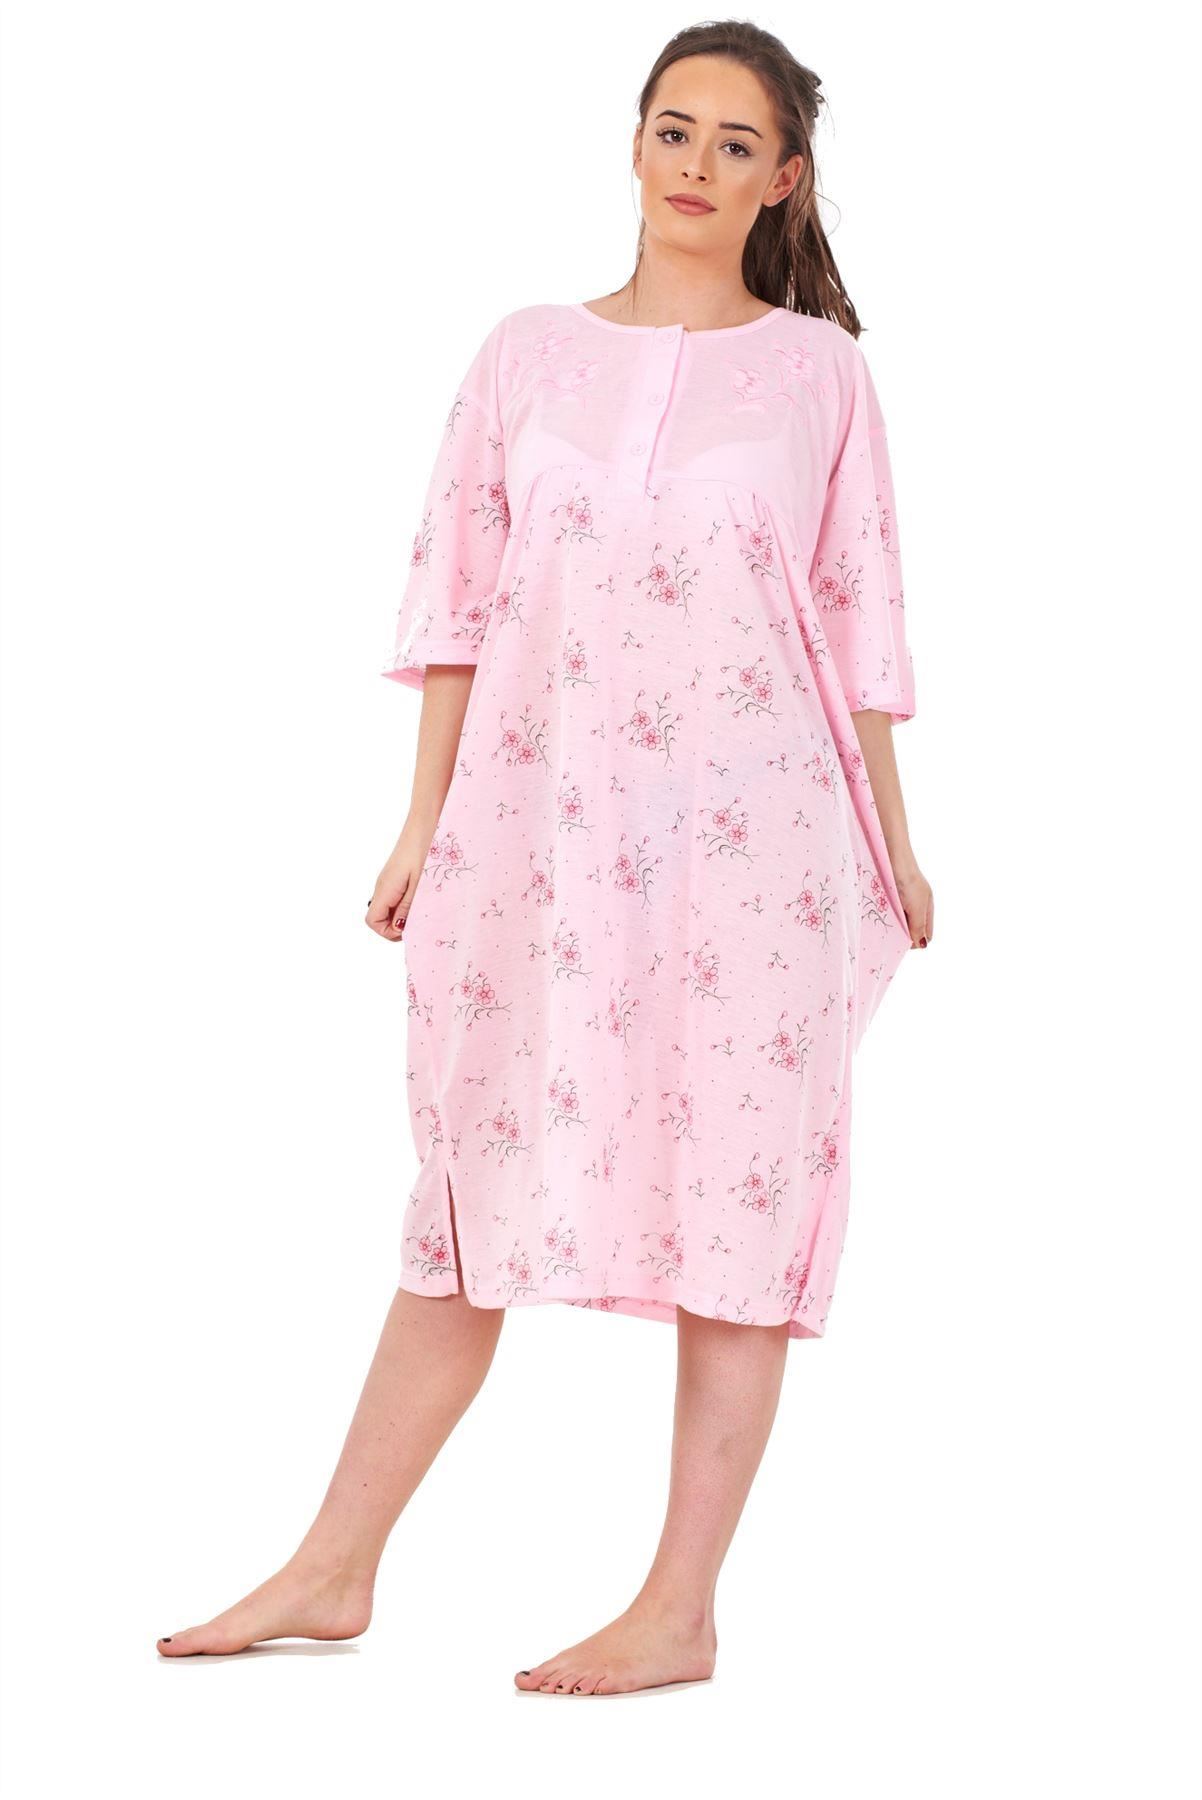 Plus Size Ladies Nightwear Button Floral Print Short Sleeve Nighties ...